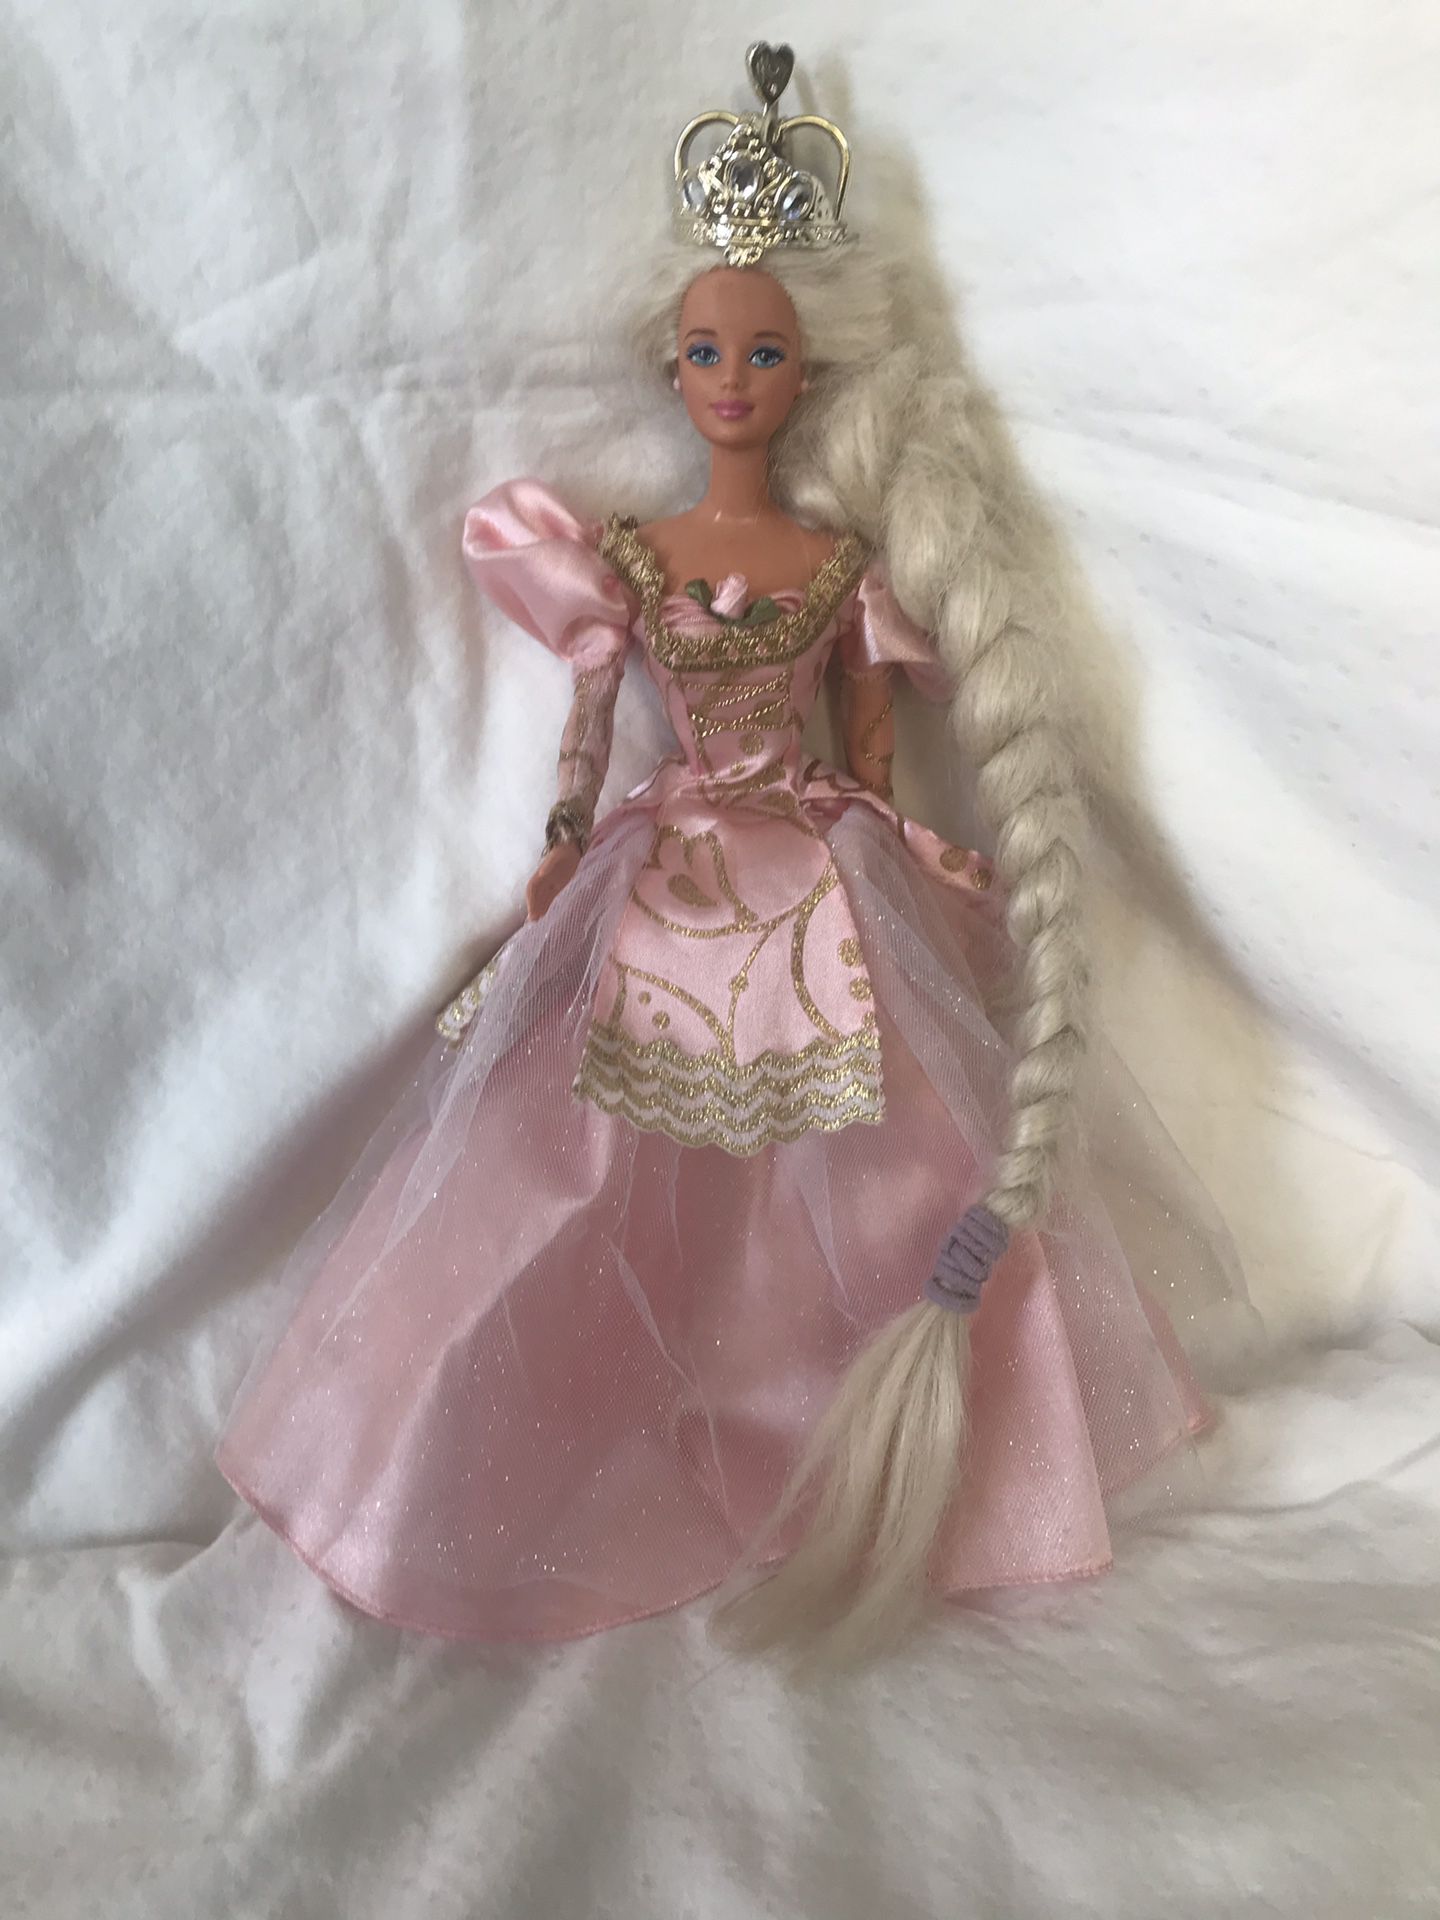 Barbie Fairy Tale “Rapunzel” doll